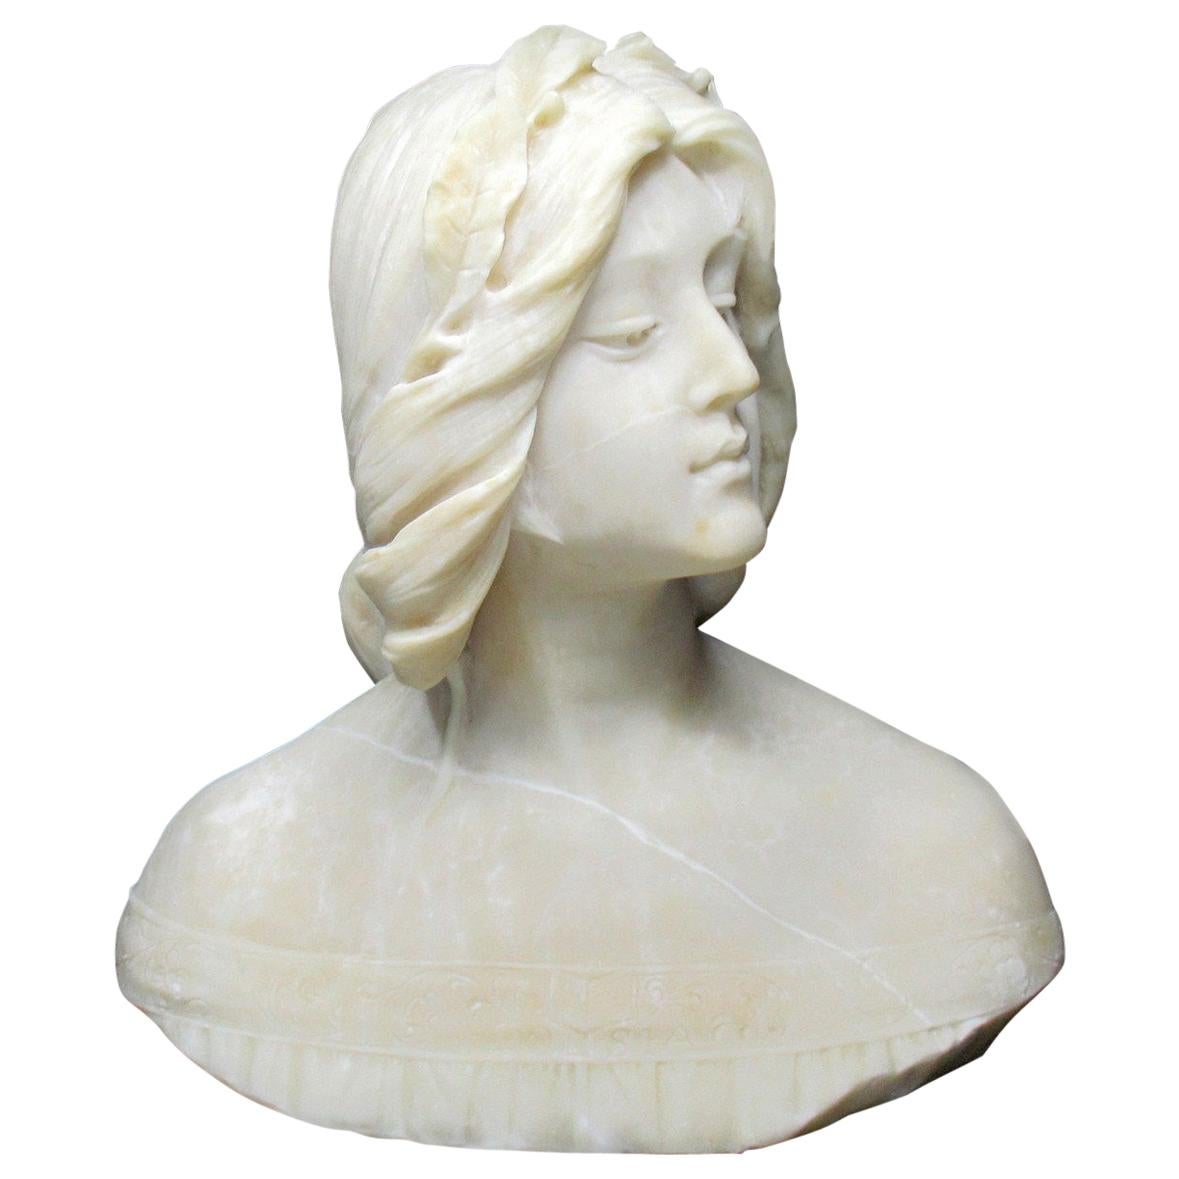 Italian Alabaster Bust Lady by Italian Emilio Fiaschi 1883-1941, 19th Century